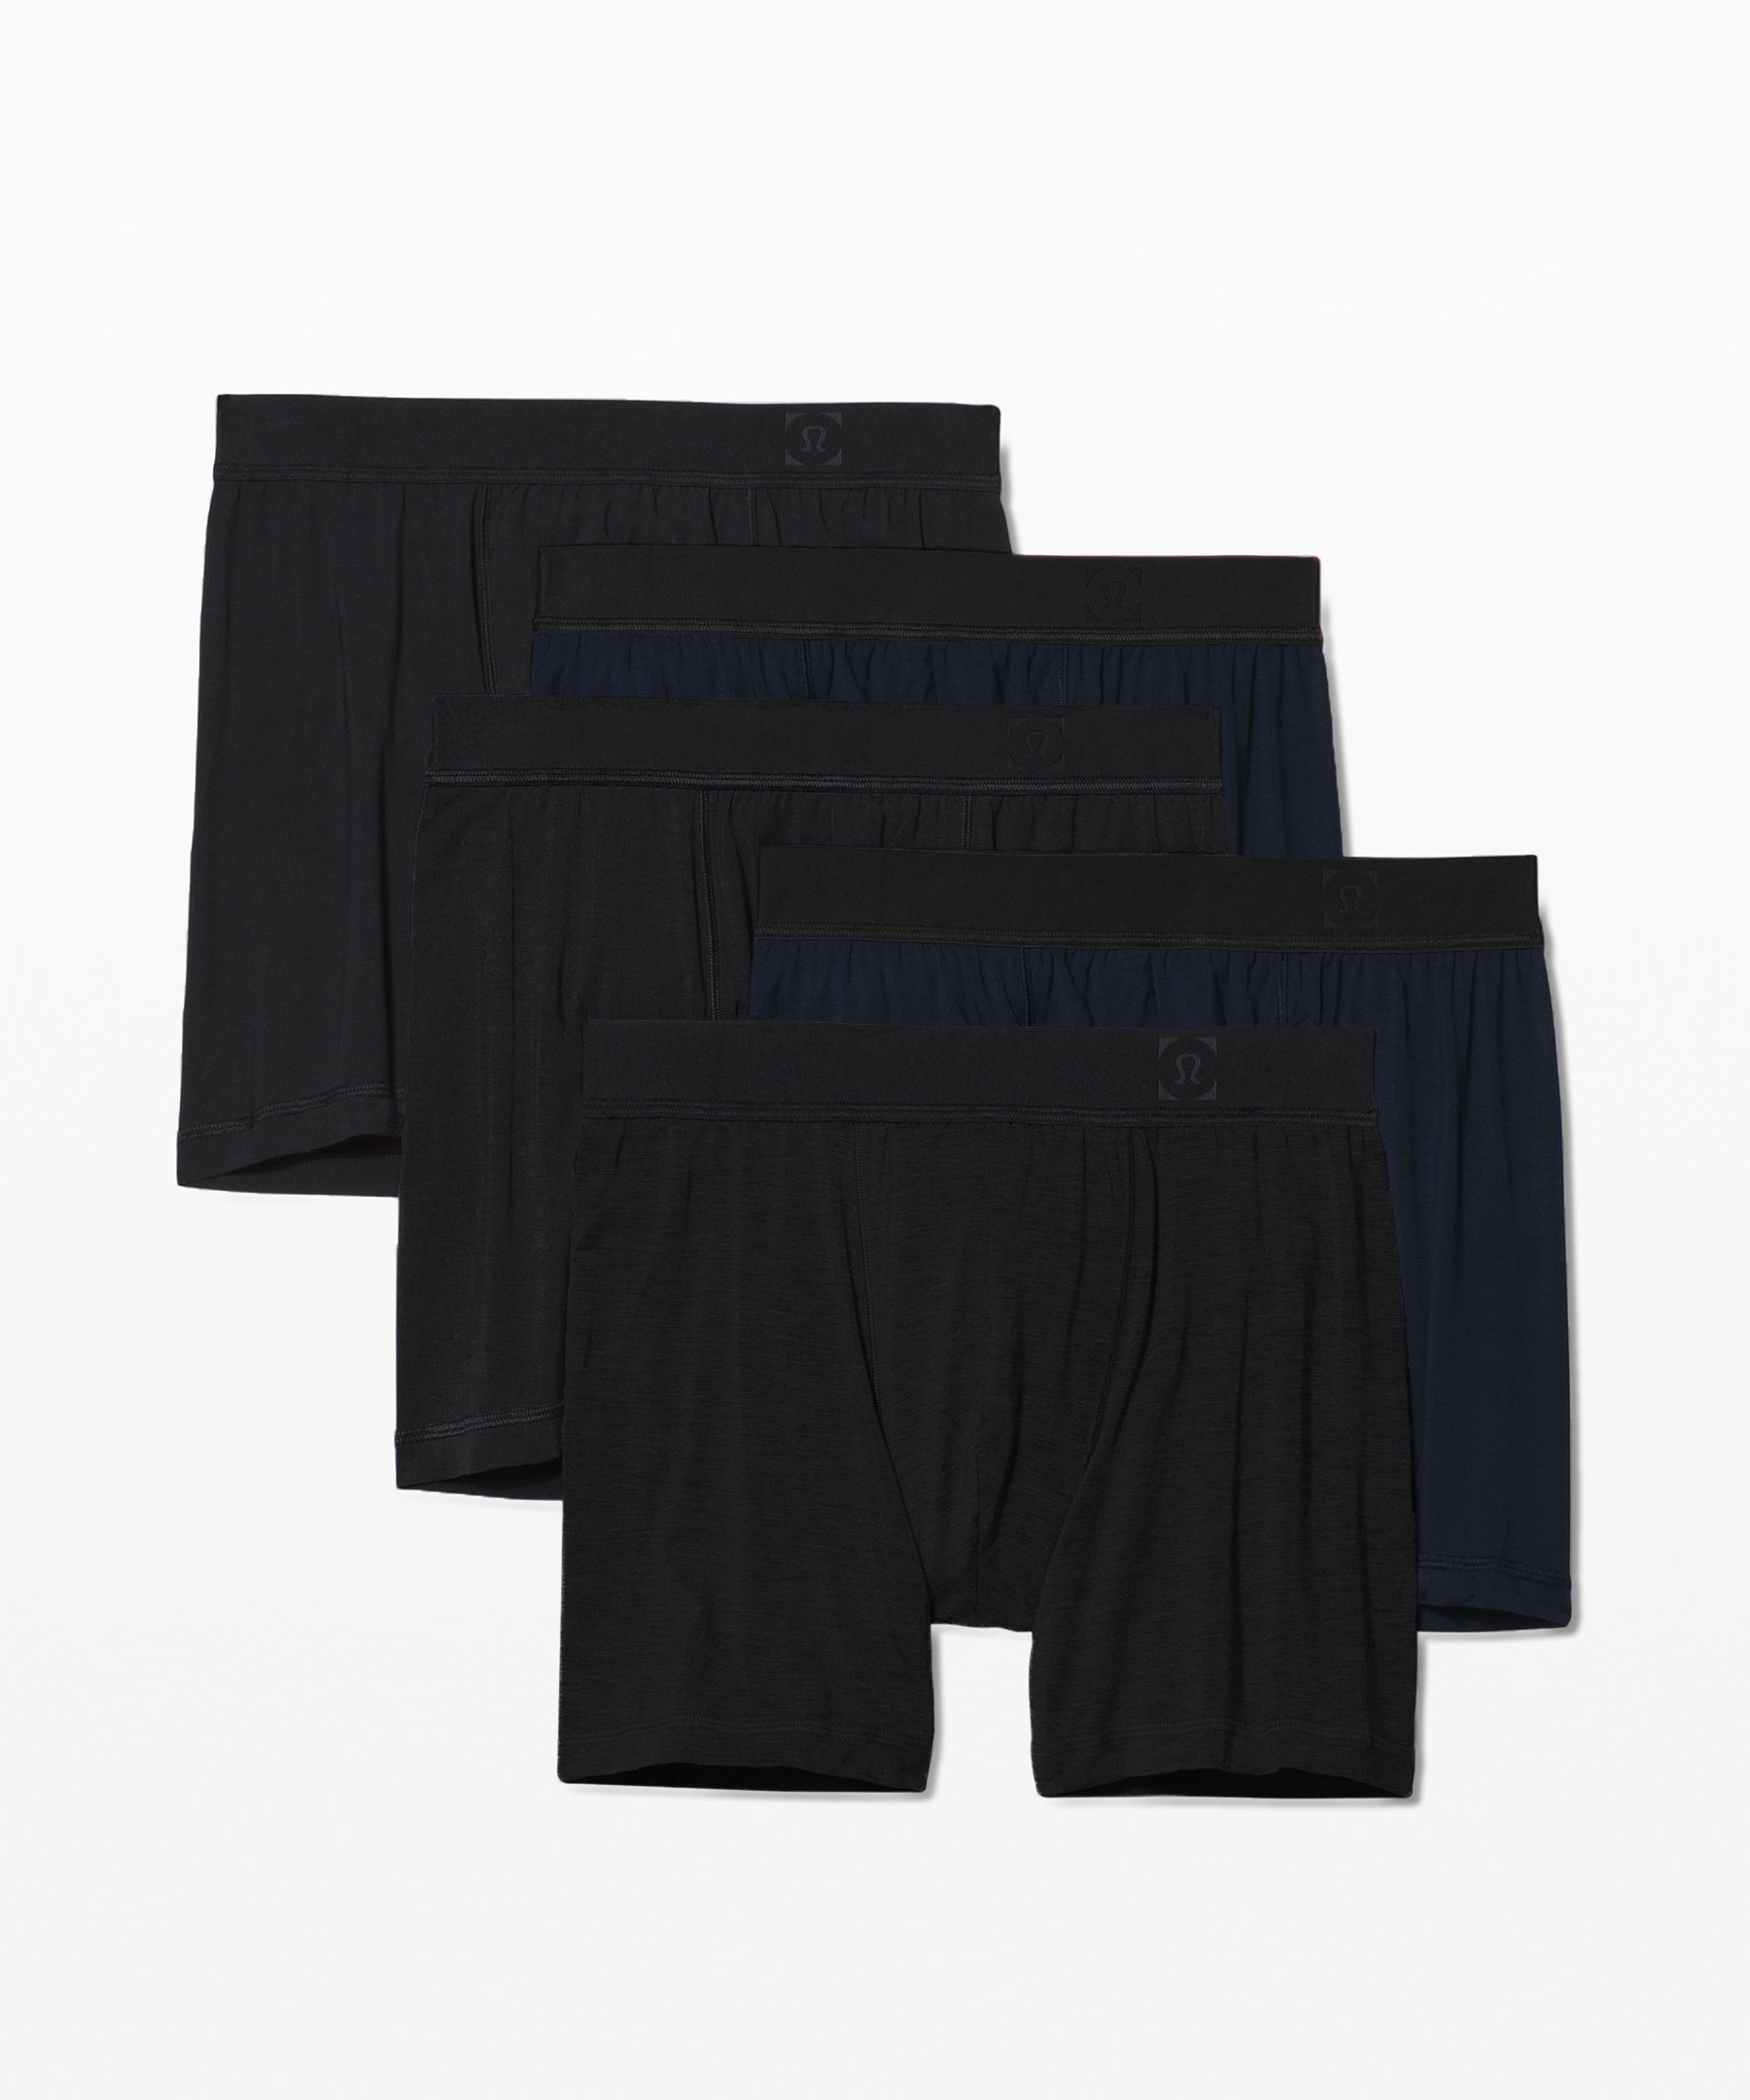 lululemon AIM Boxer - 5 - Black, Underwear